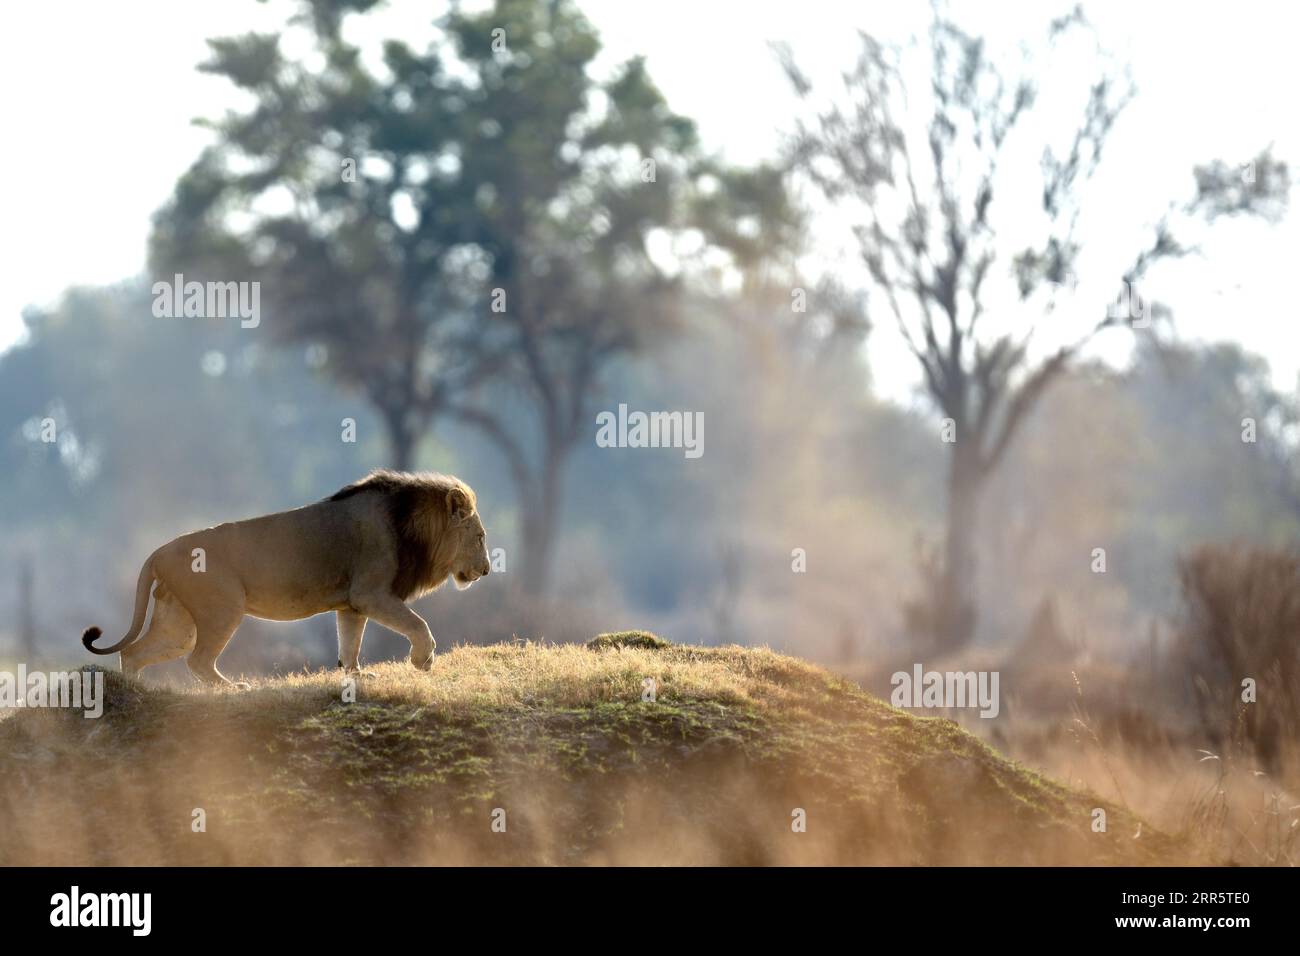 Après une longue matinée de chasse, un lion mâle grimpe sur un monticule herbeux pour arpenter la savane environnante. Banque D'Images